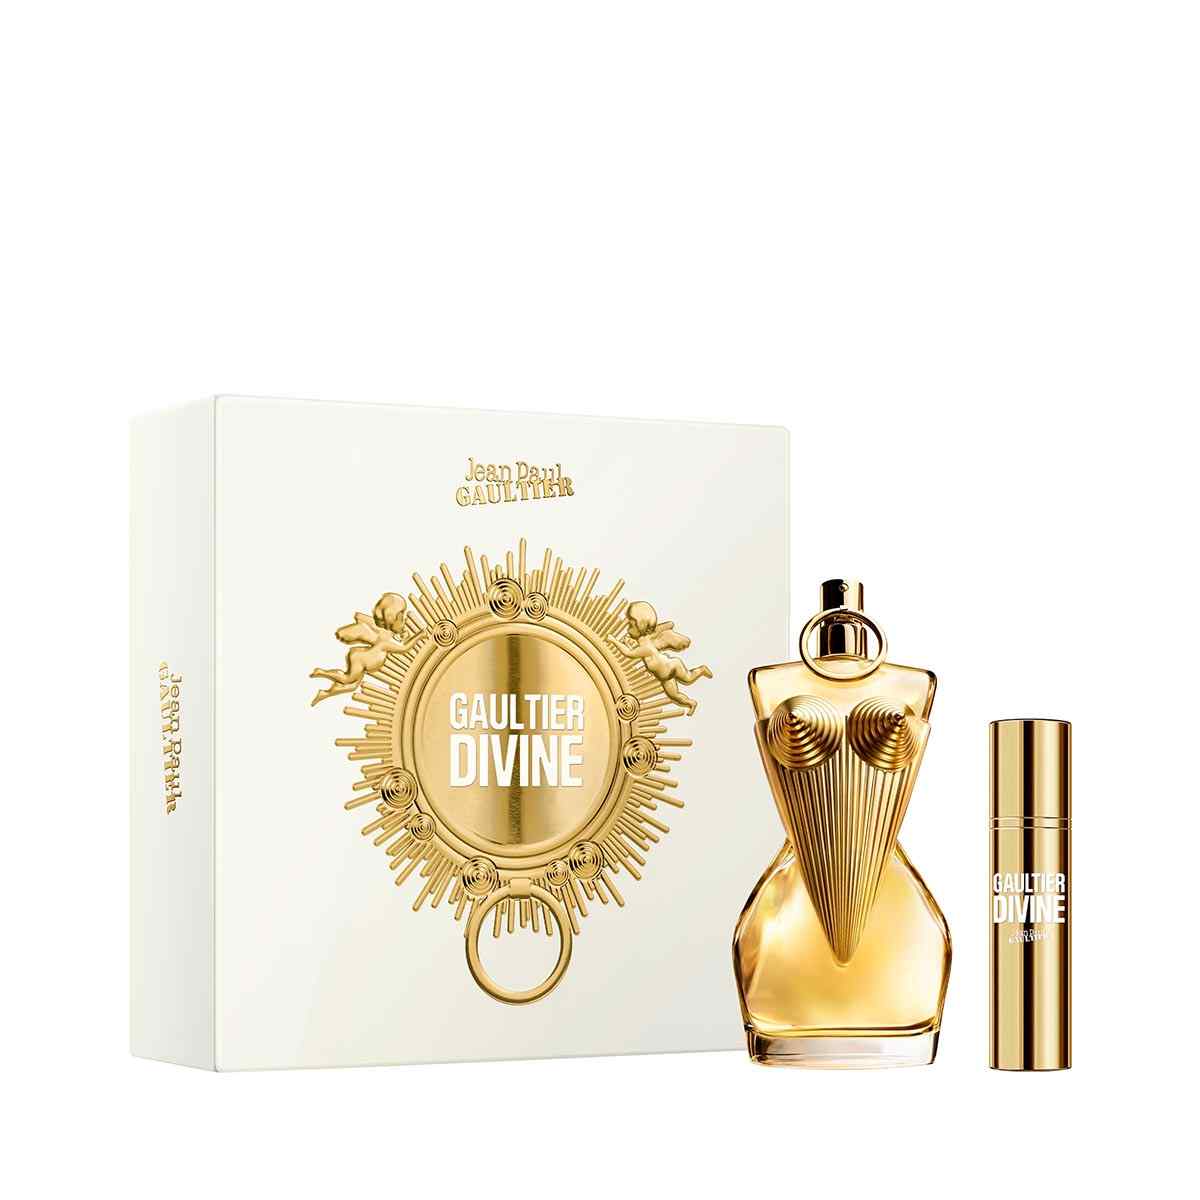 Gaultier Divine Eau de Parfum 100ml Gift Set